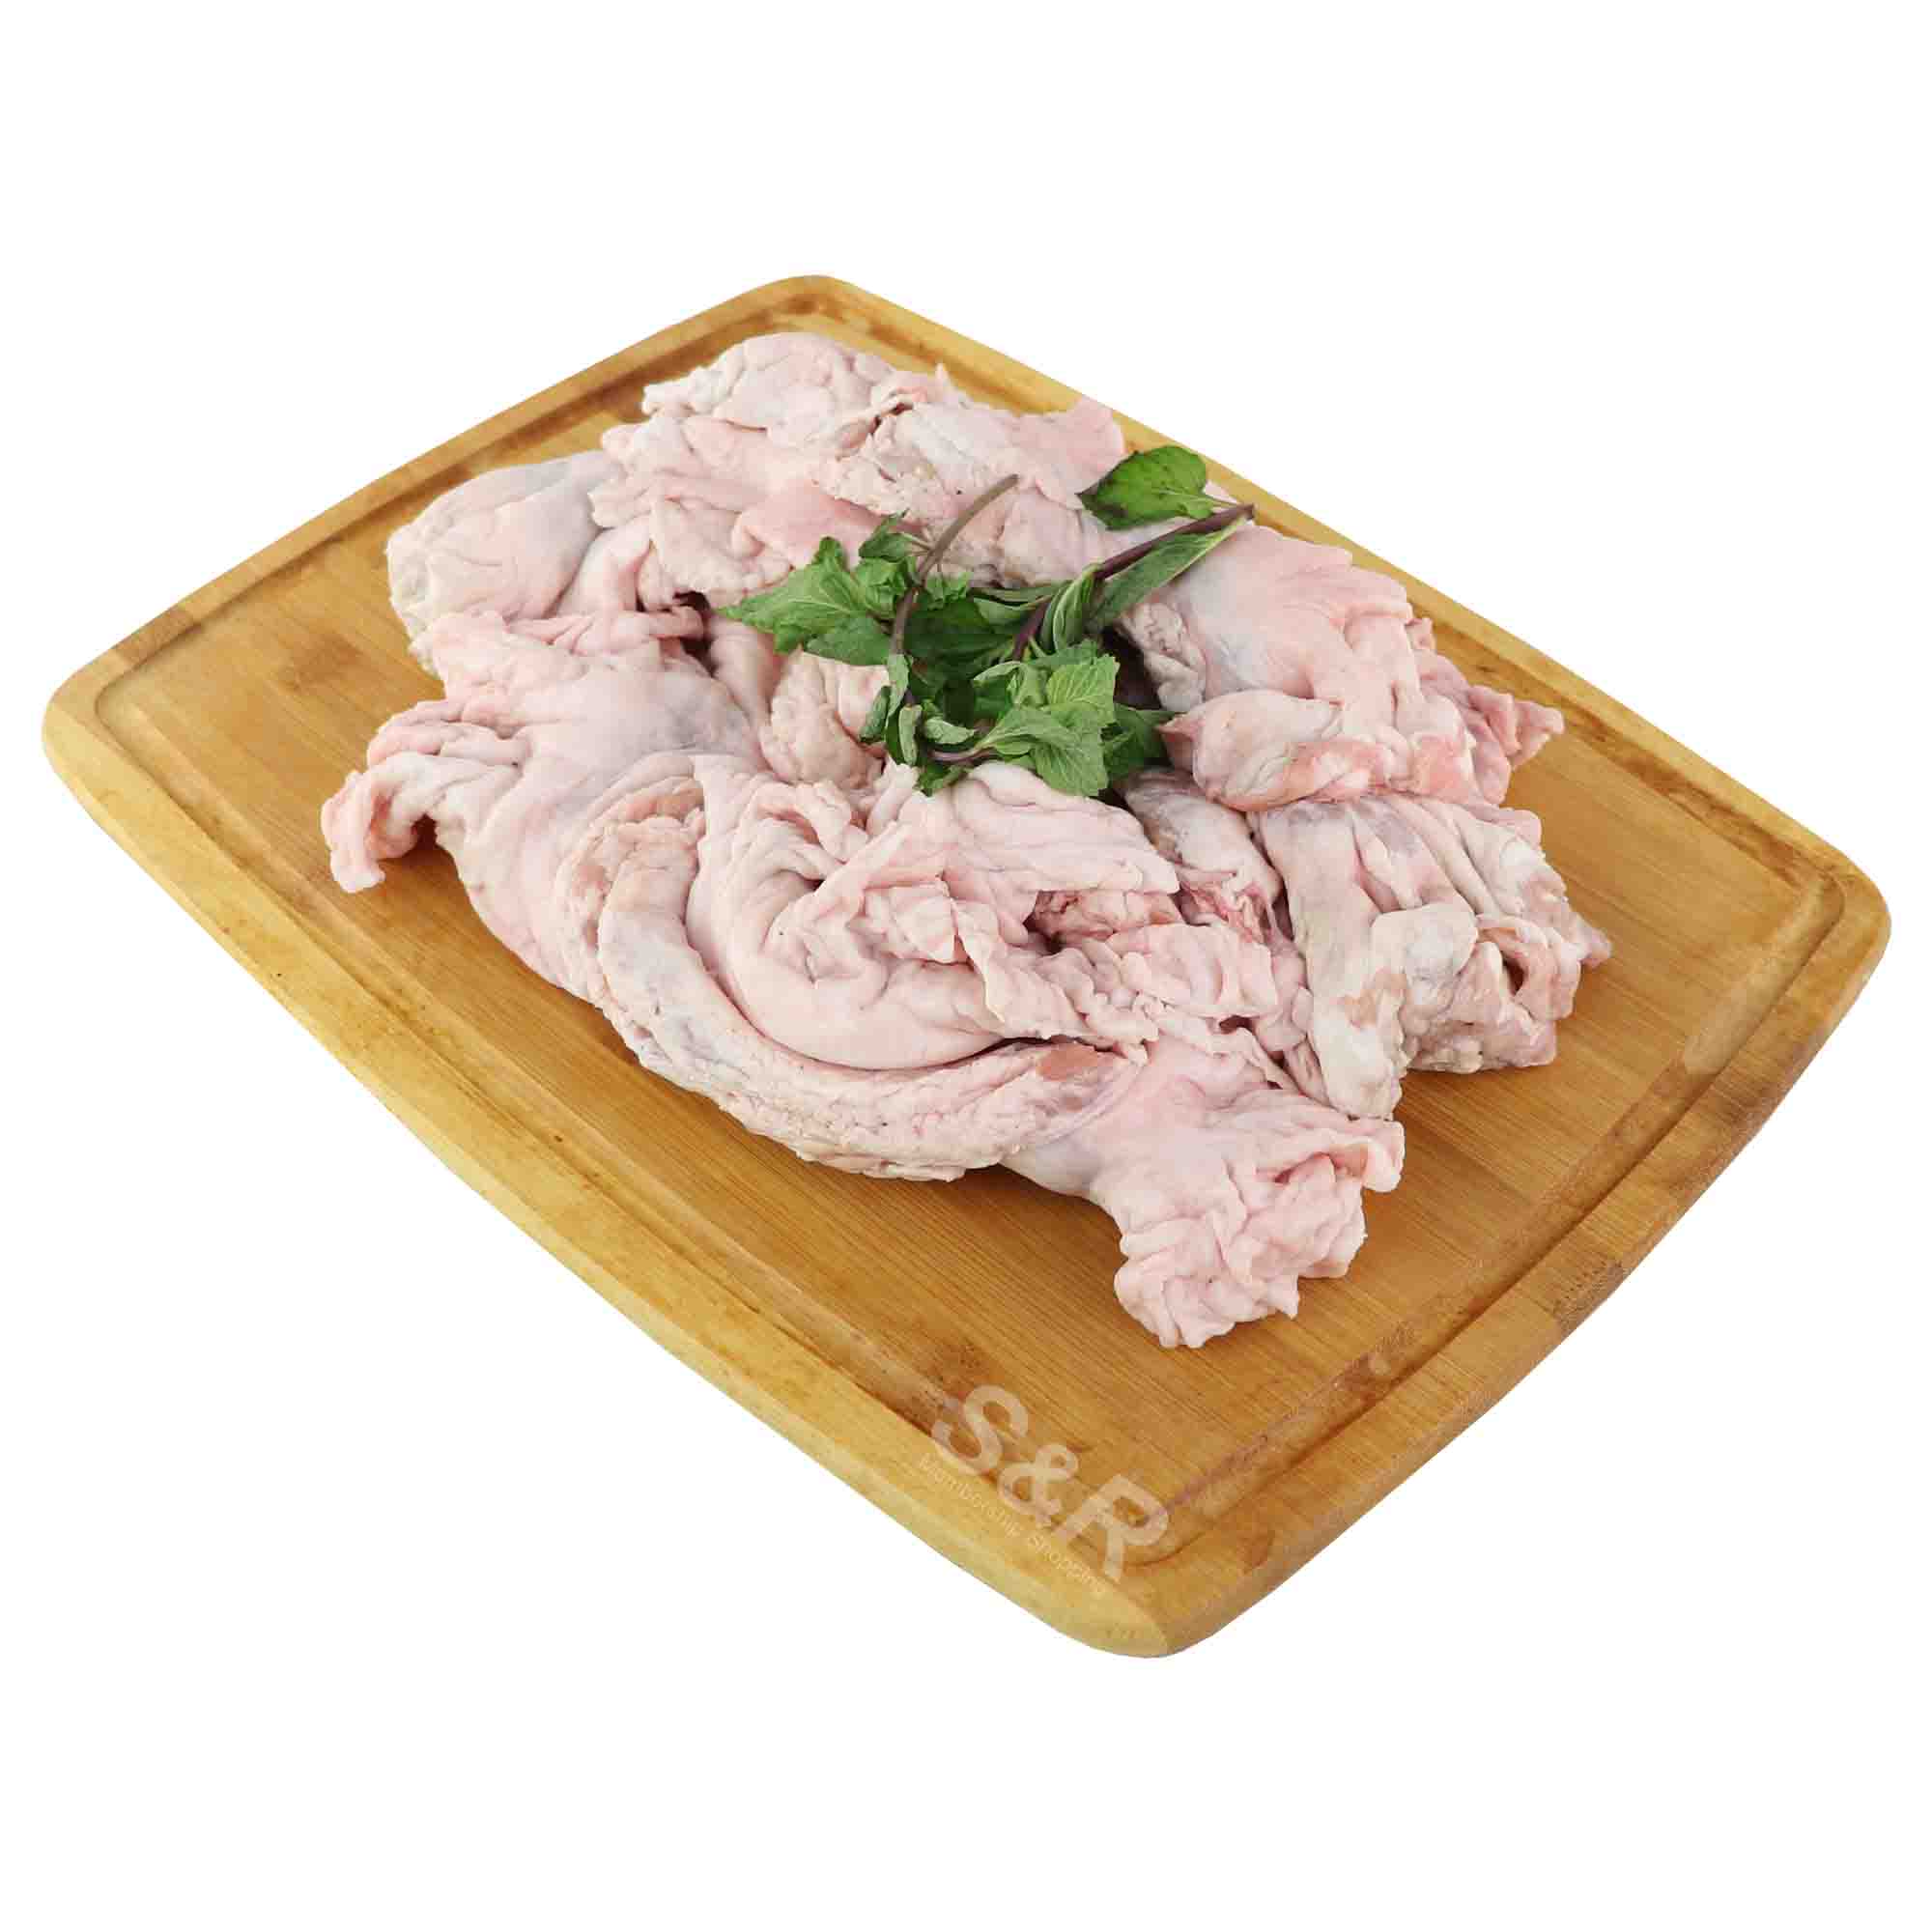 Members' Value Pork Flower Fat approx. 1.7kg